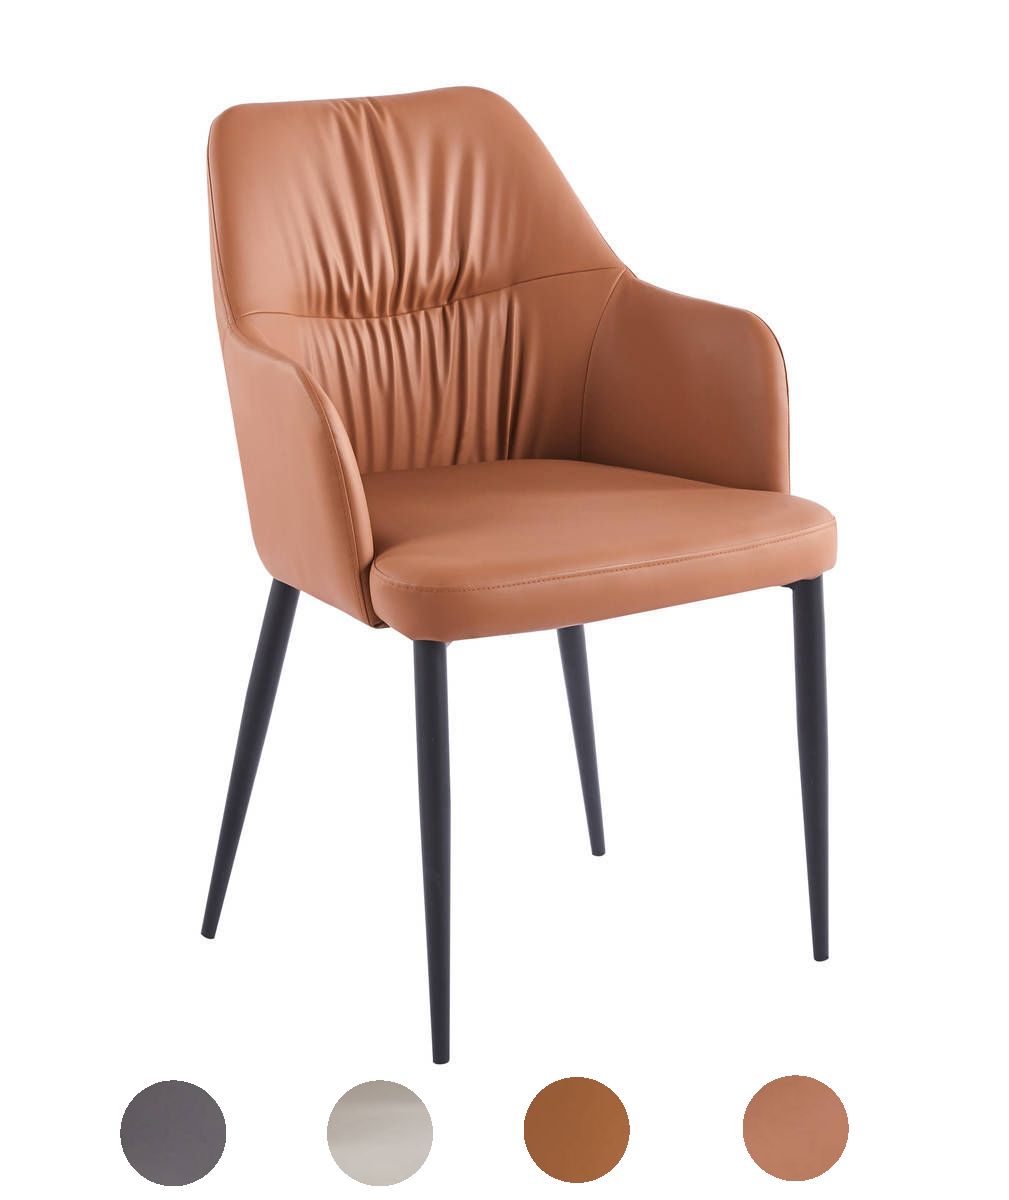 2er Stuhl Set Sessel Esszimmerstuhl Polster Esszimmerstühle Stühle Leder von Kayoom